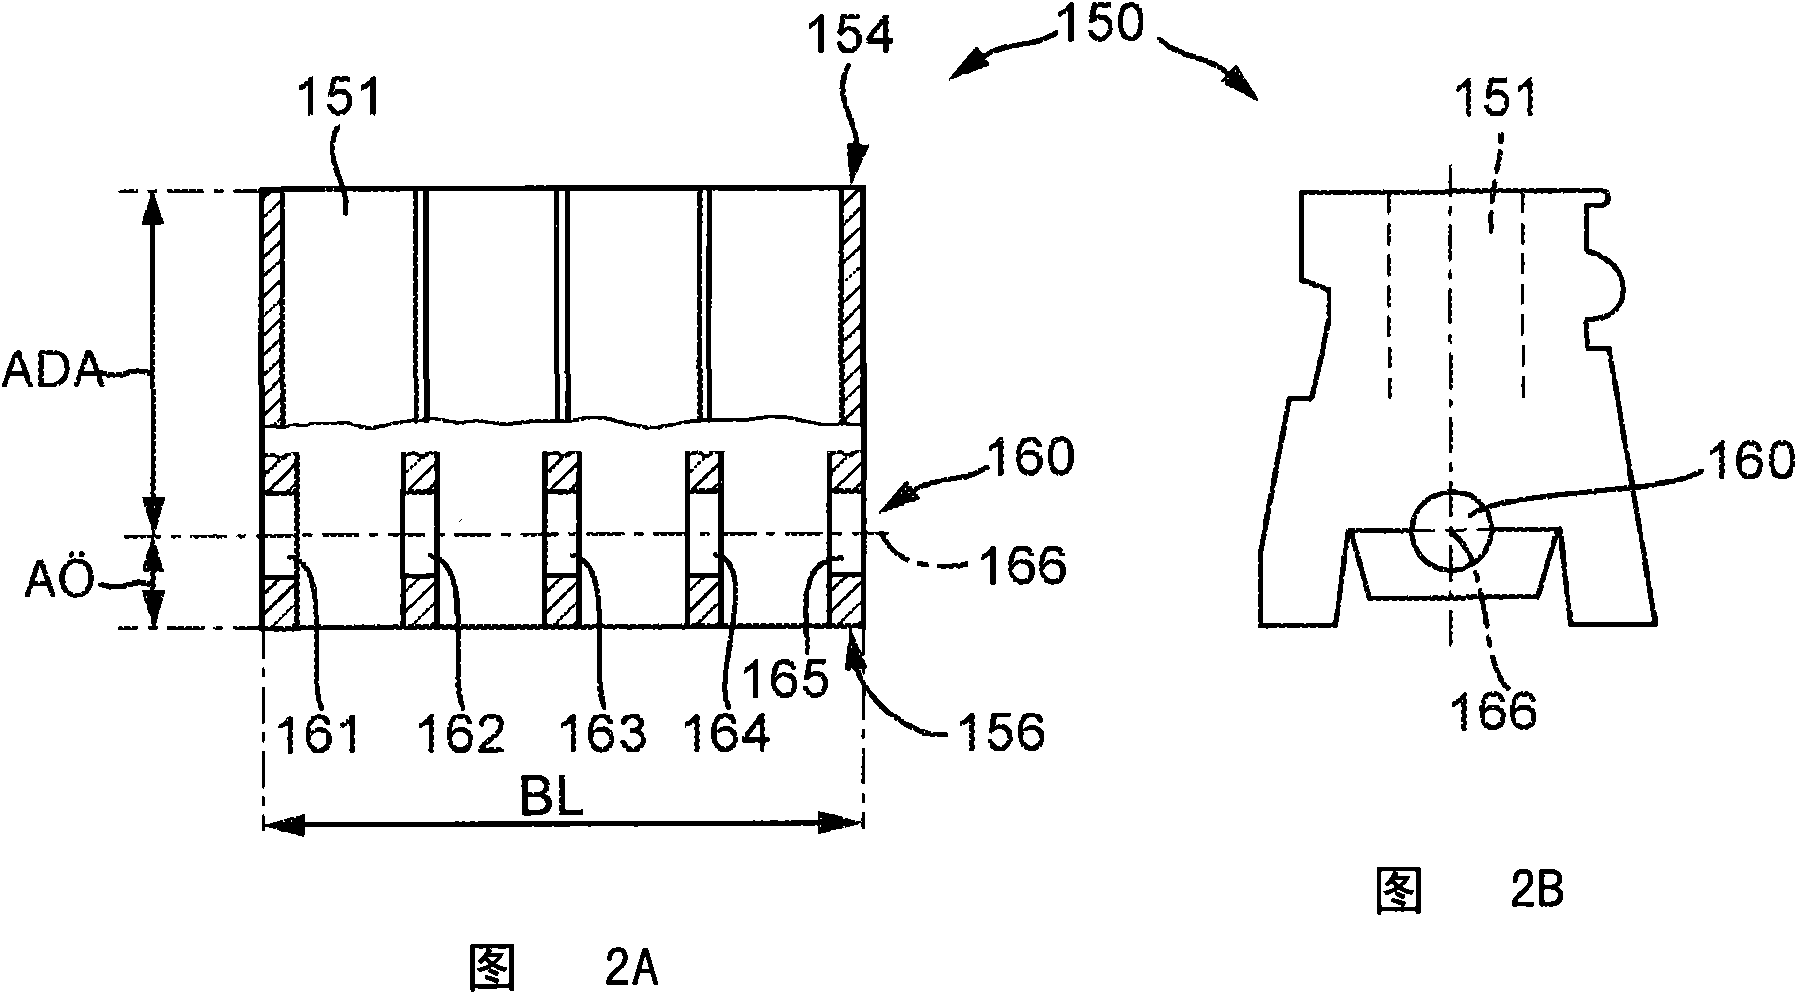 Method and apparatus for finish machining crankshaft bearing borehole